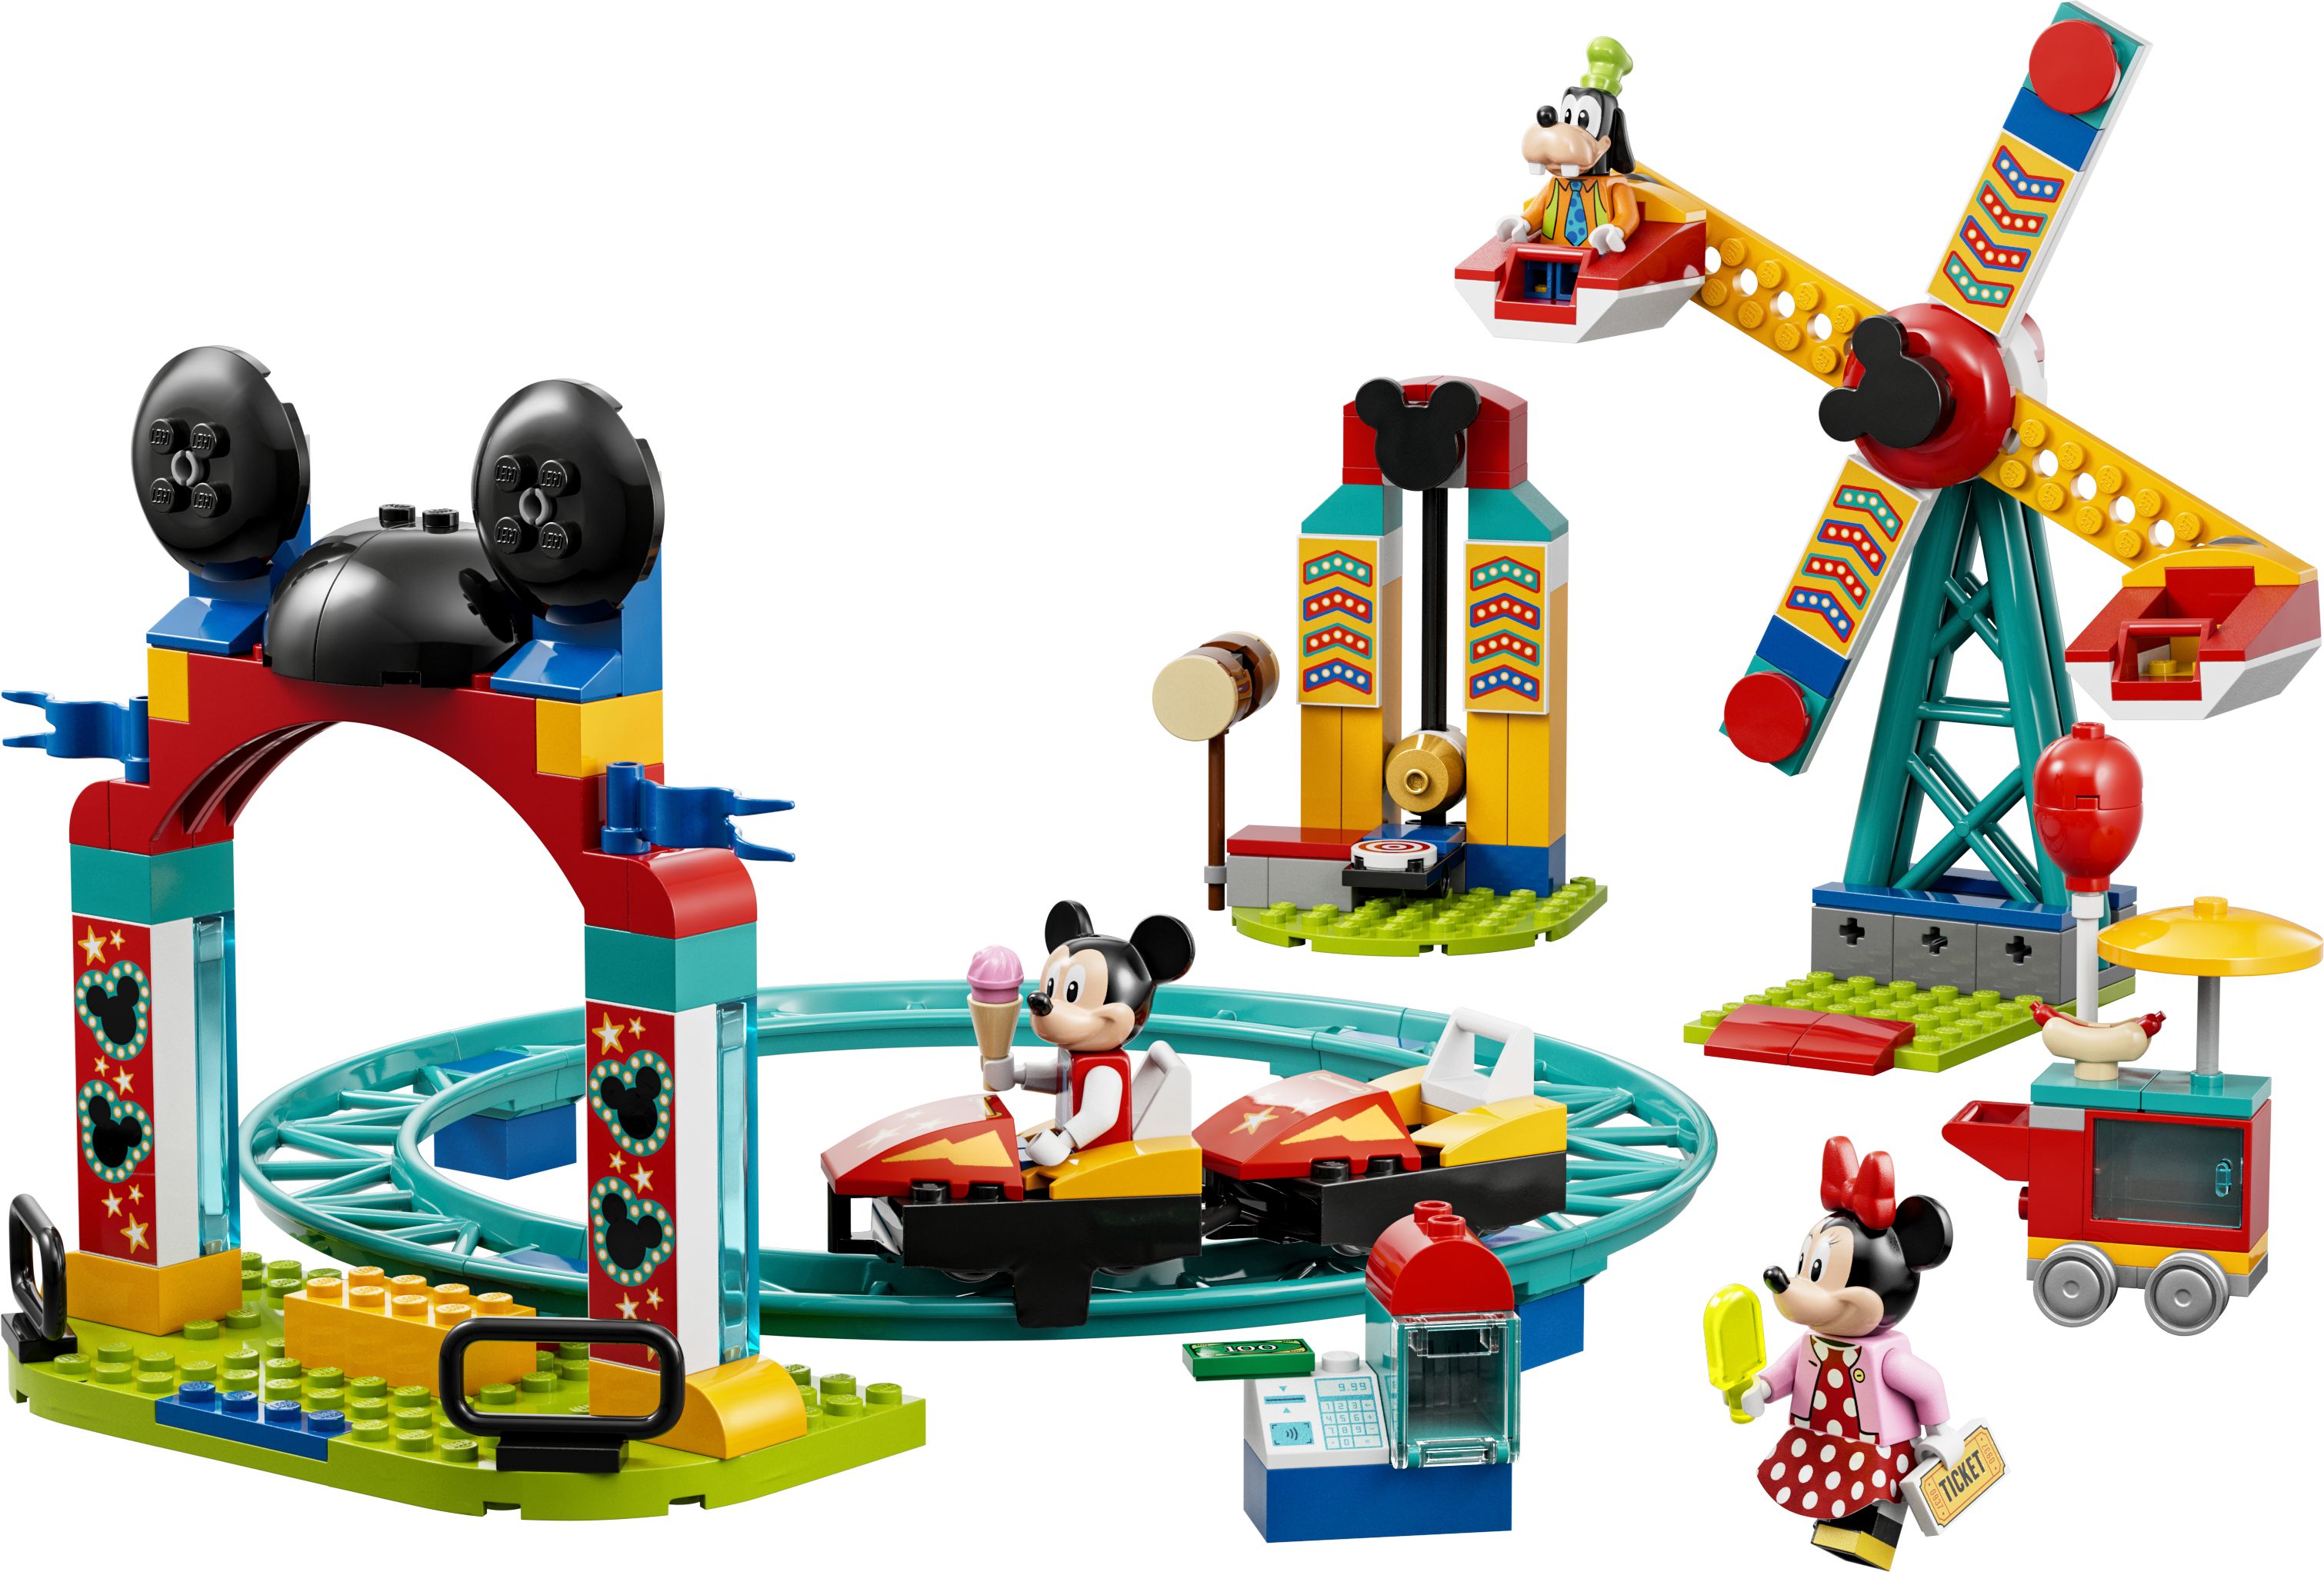 LEGO Disney 10778 Micky, Minnie und Goofy auf dem Jahrmarkt